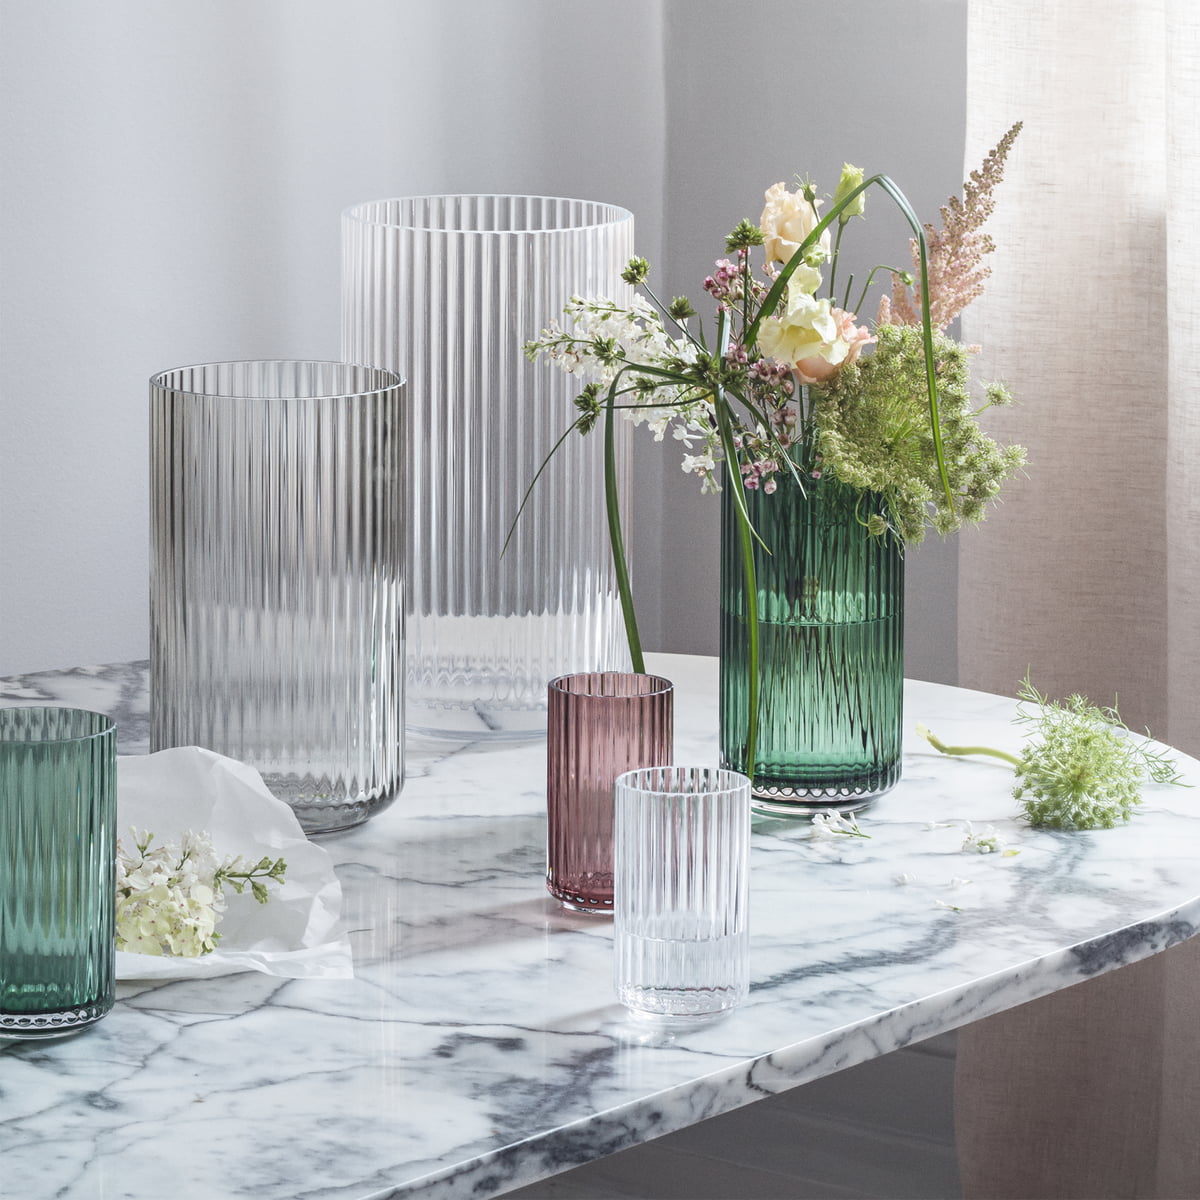 lyngby glas vase clear